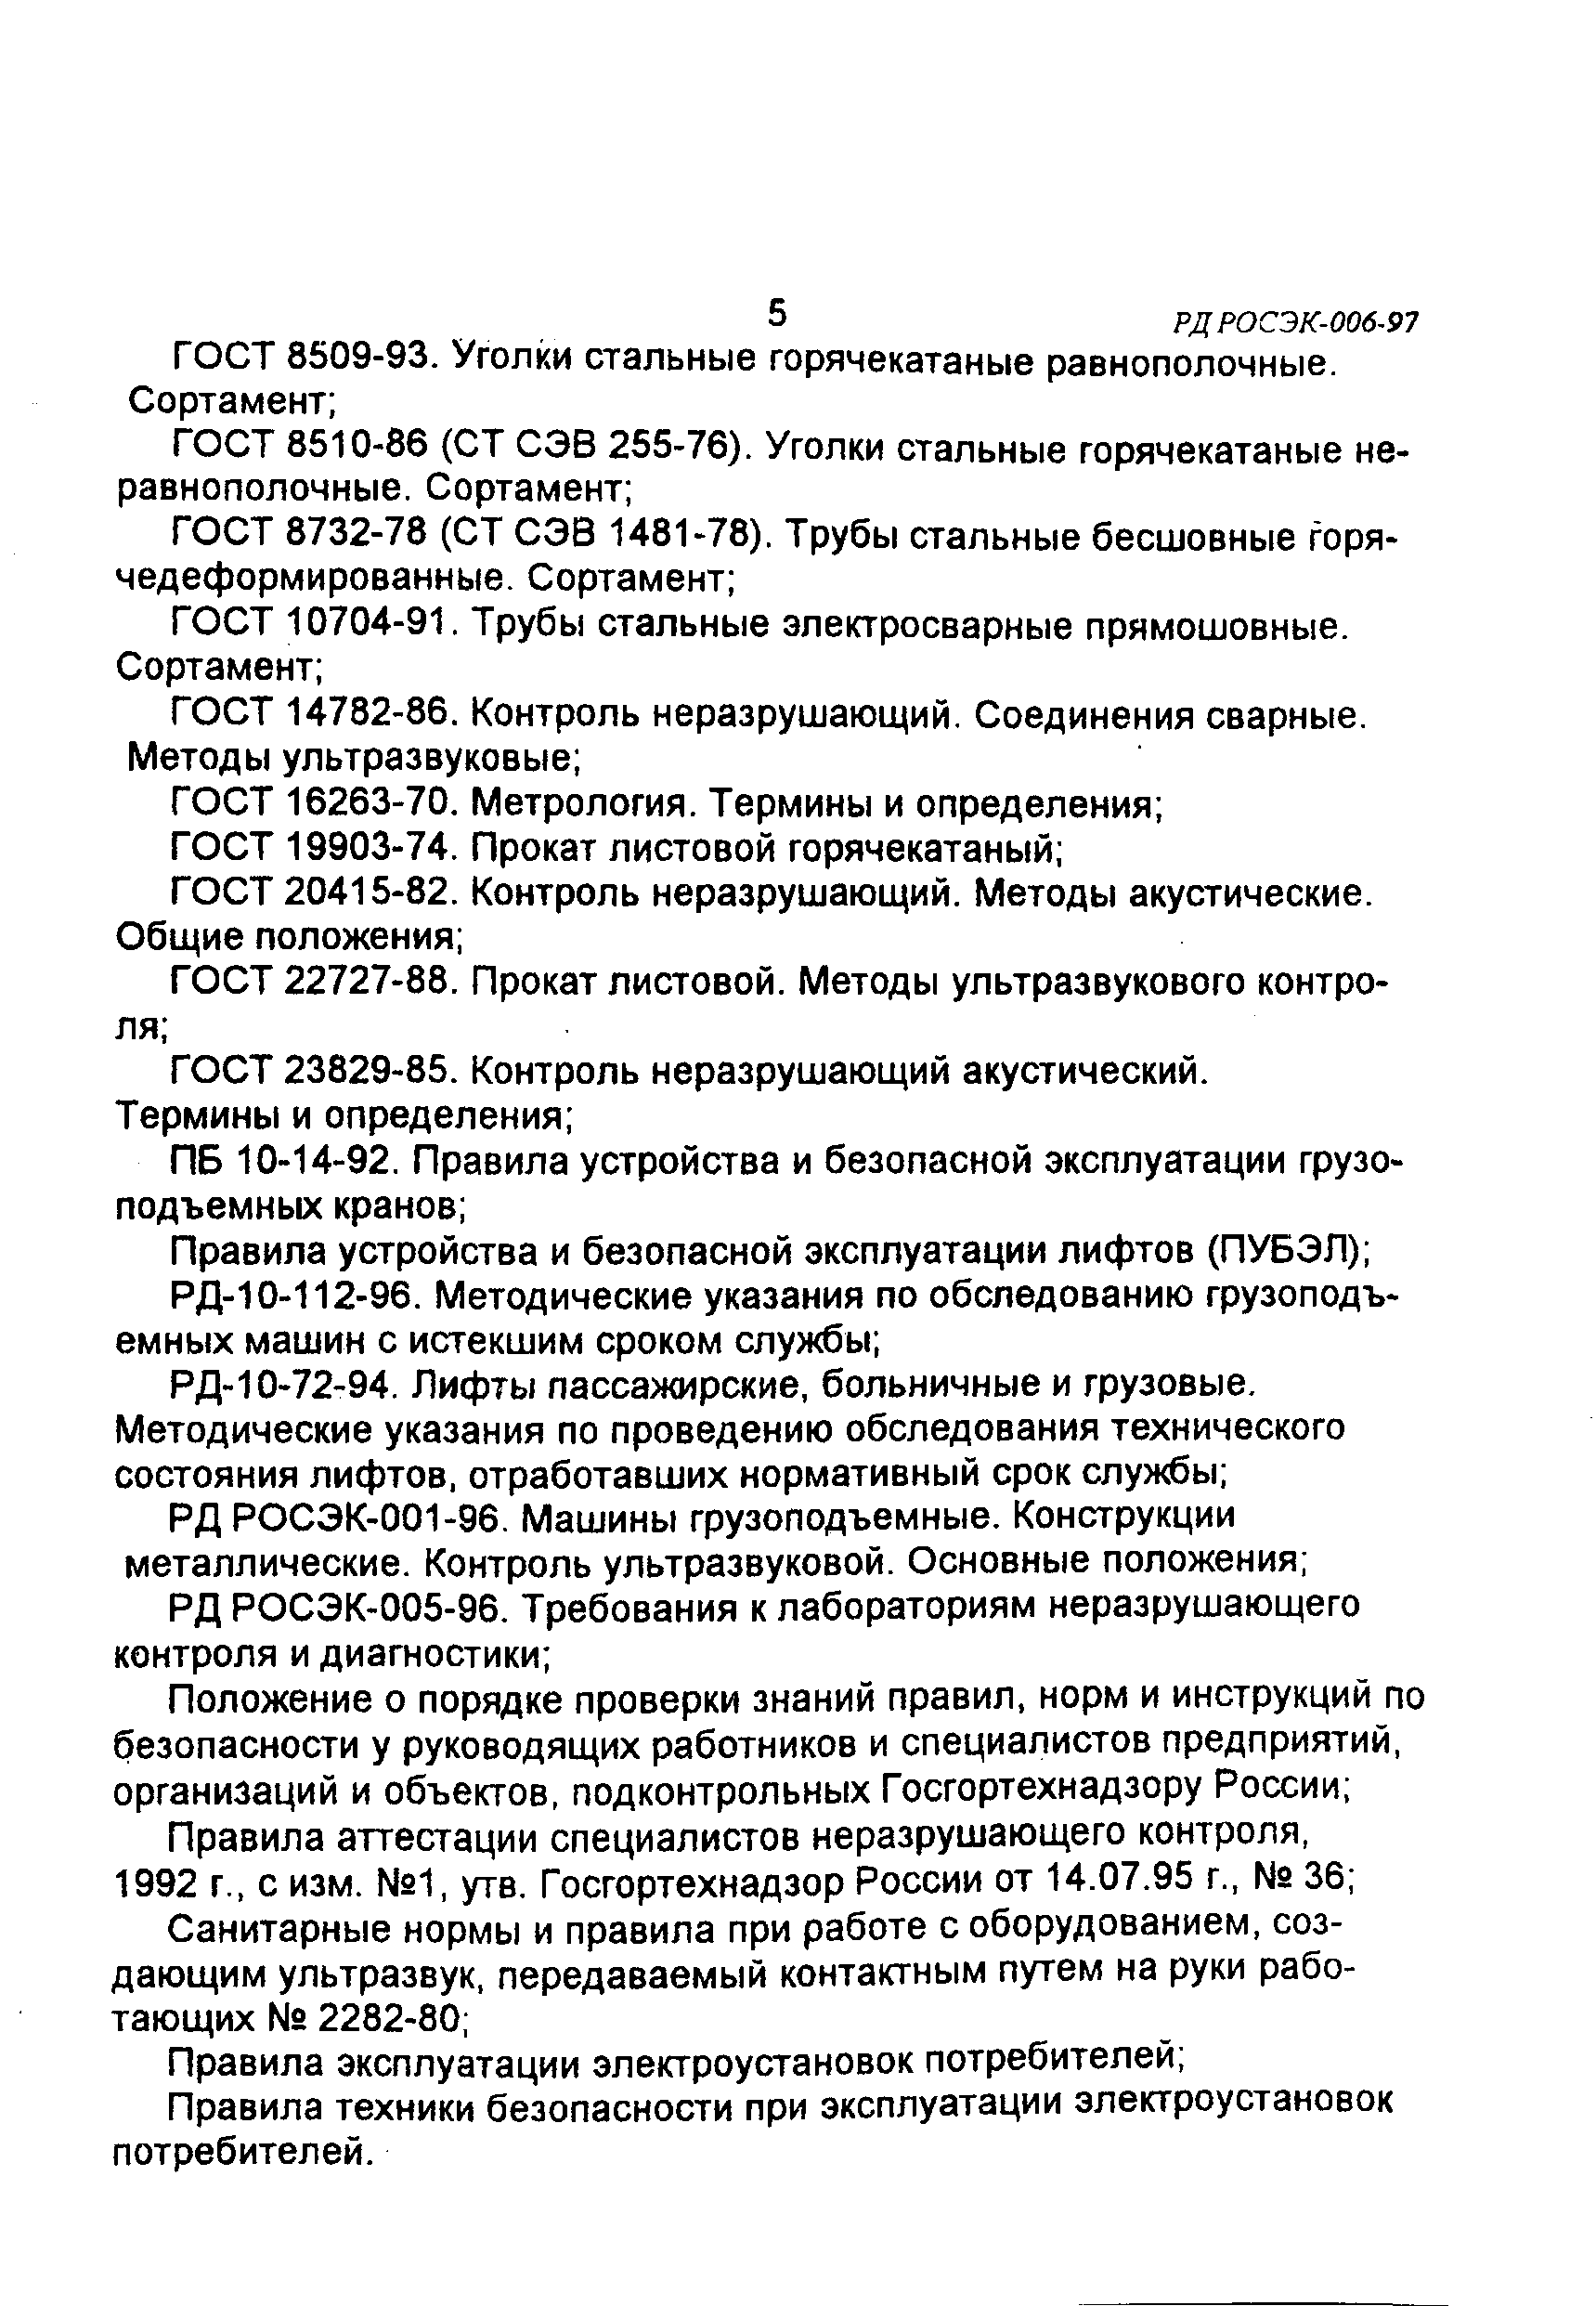 РД РОСЭК 006-97